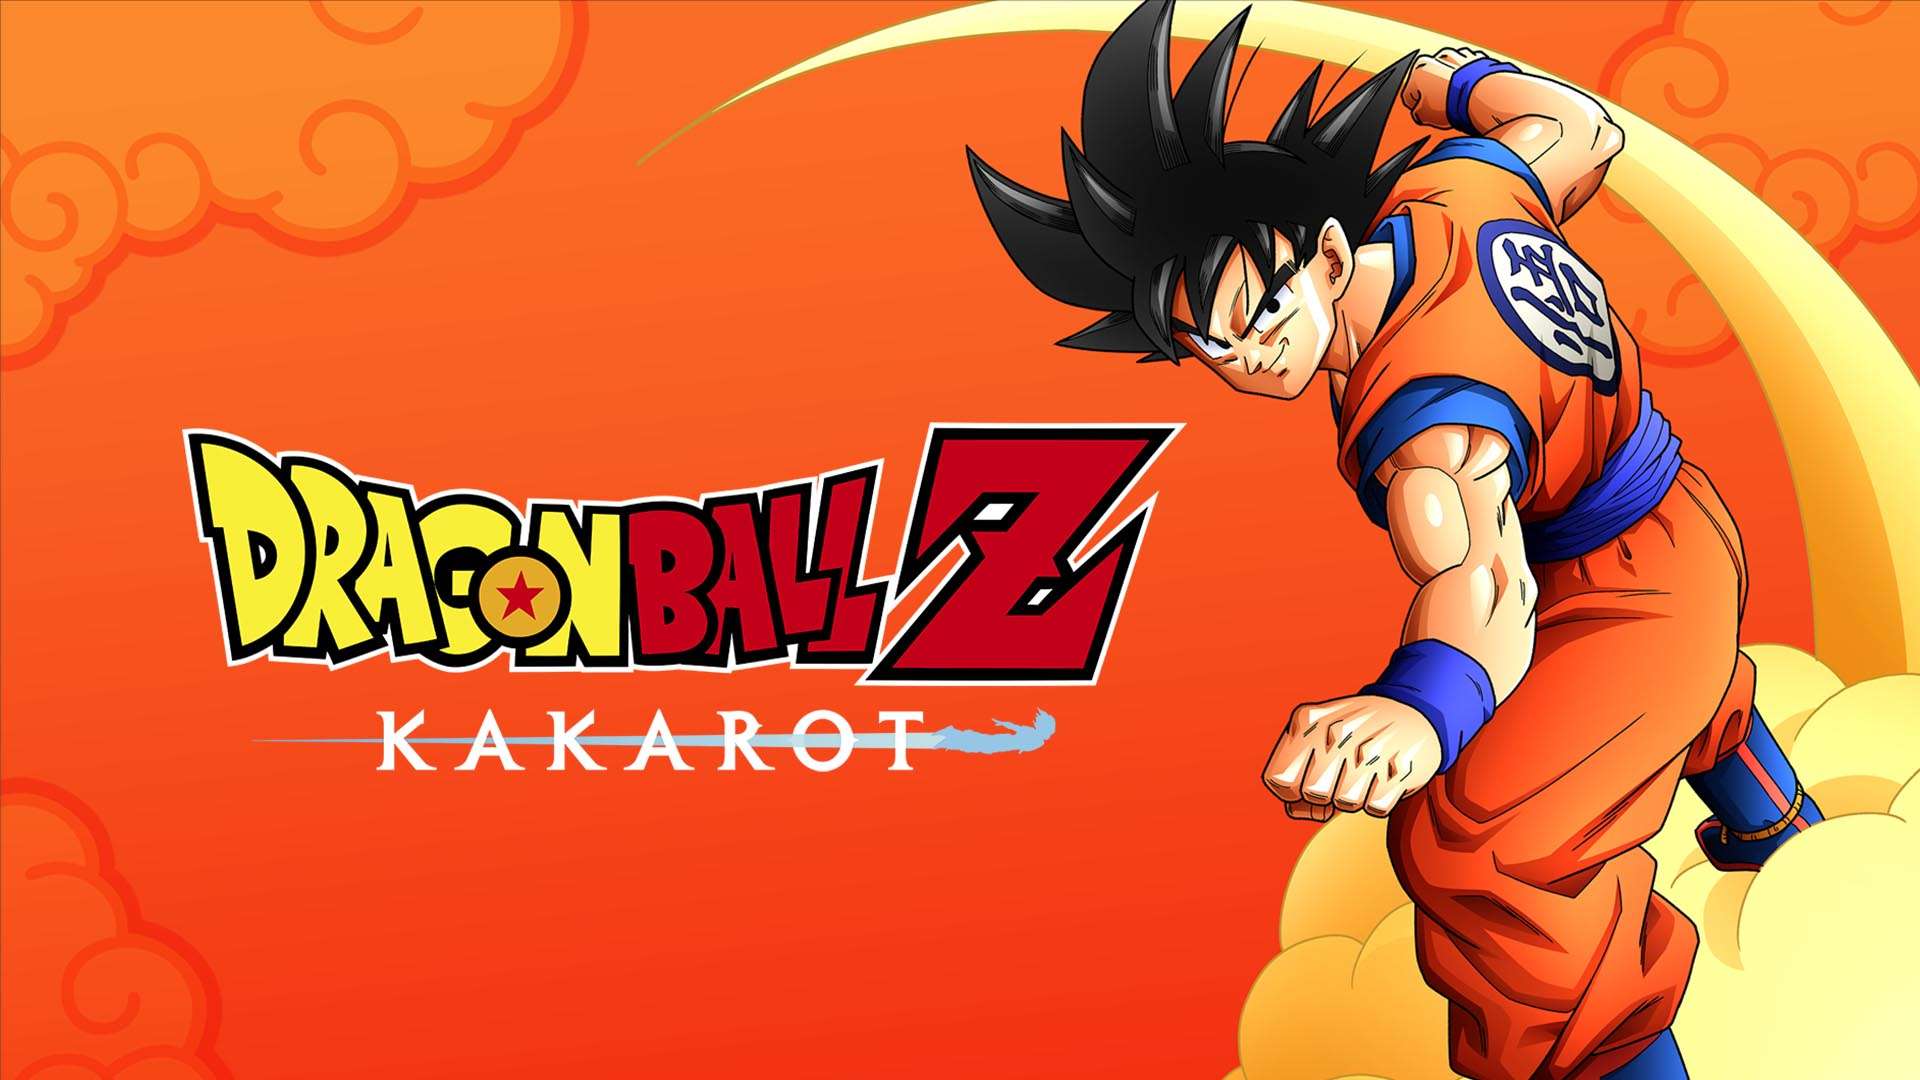 Dragon Ball Z Kakarot recibirá en verano el DLC de Trunks: The Warrior of Hope